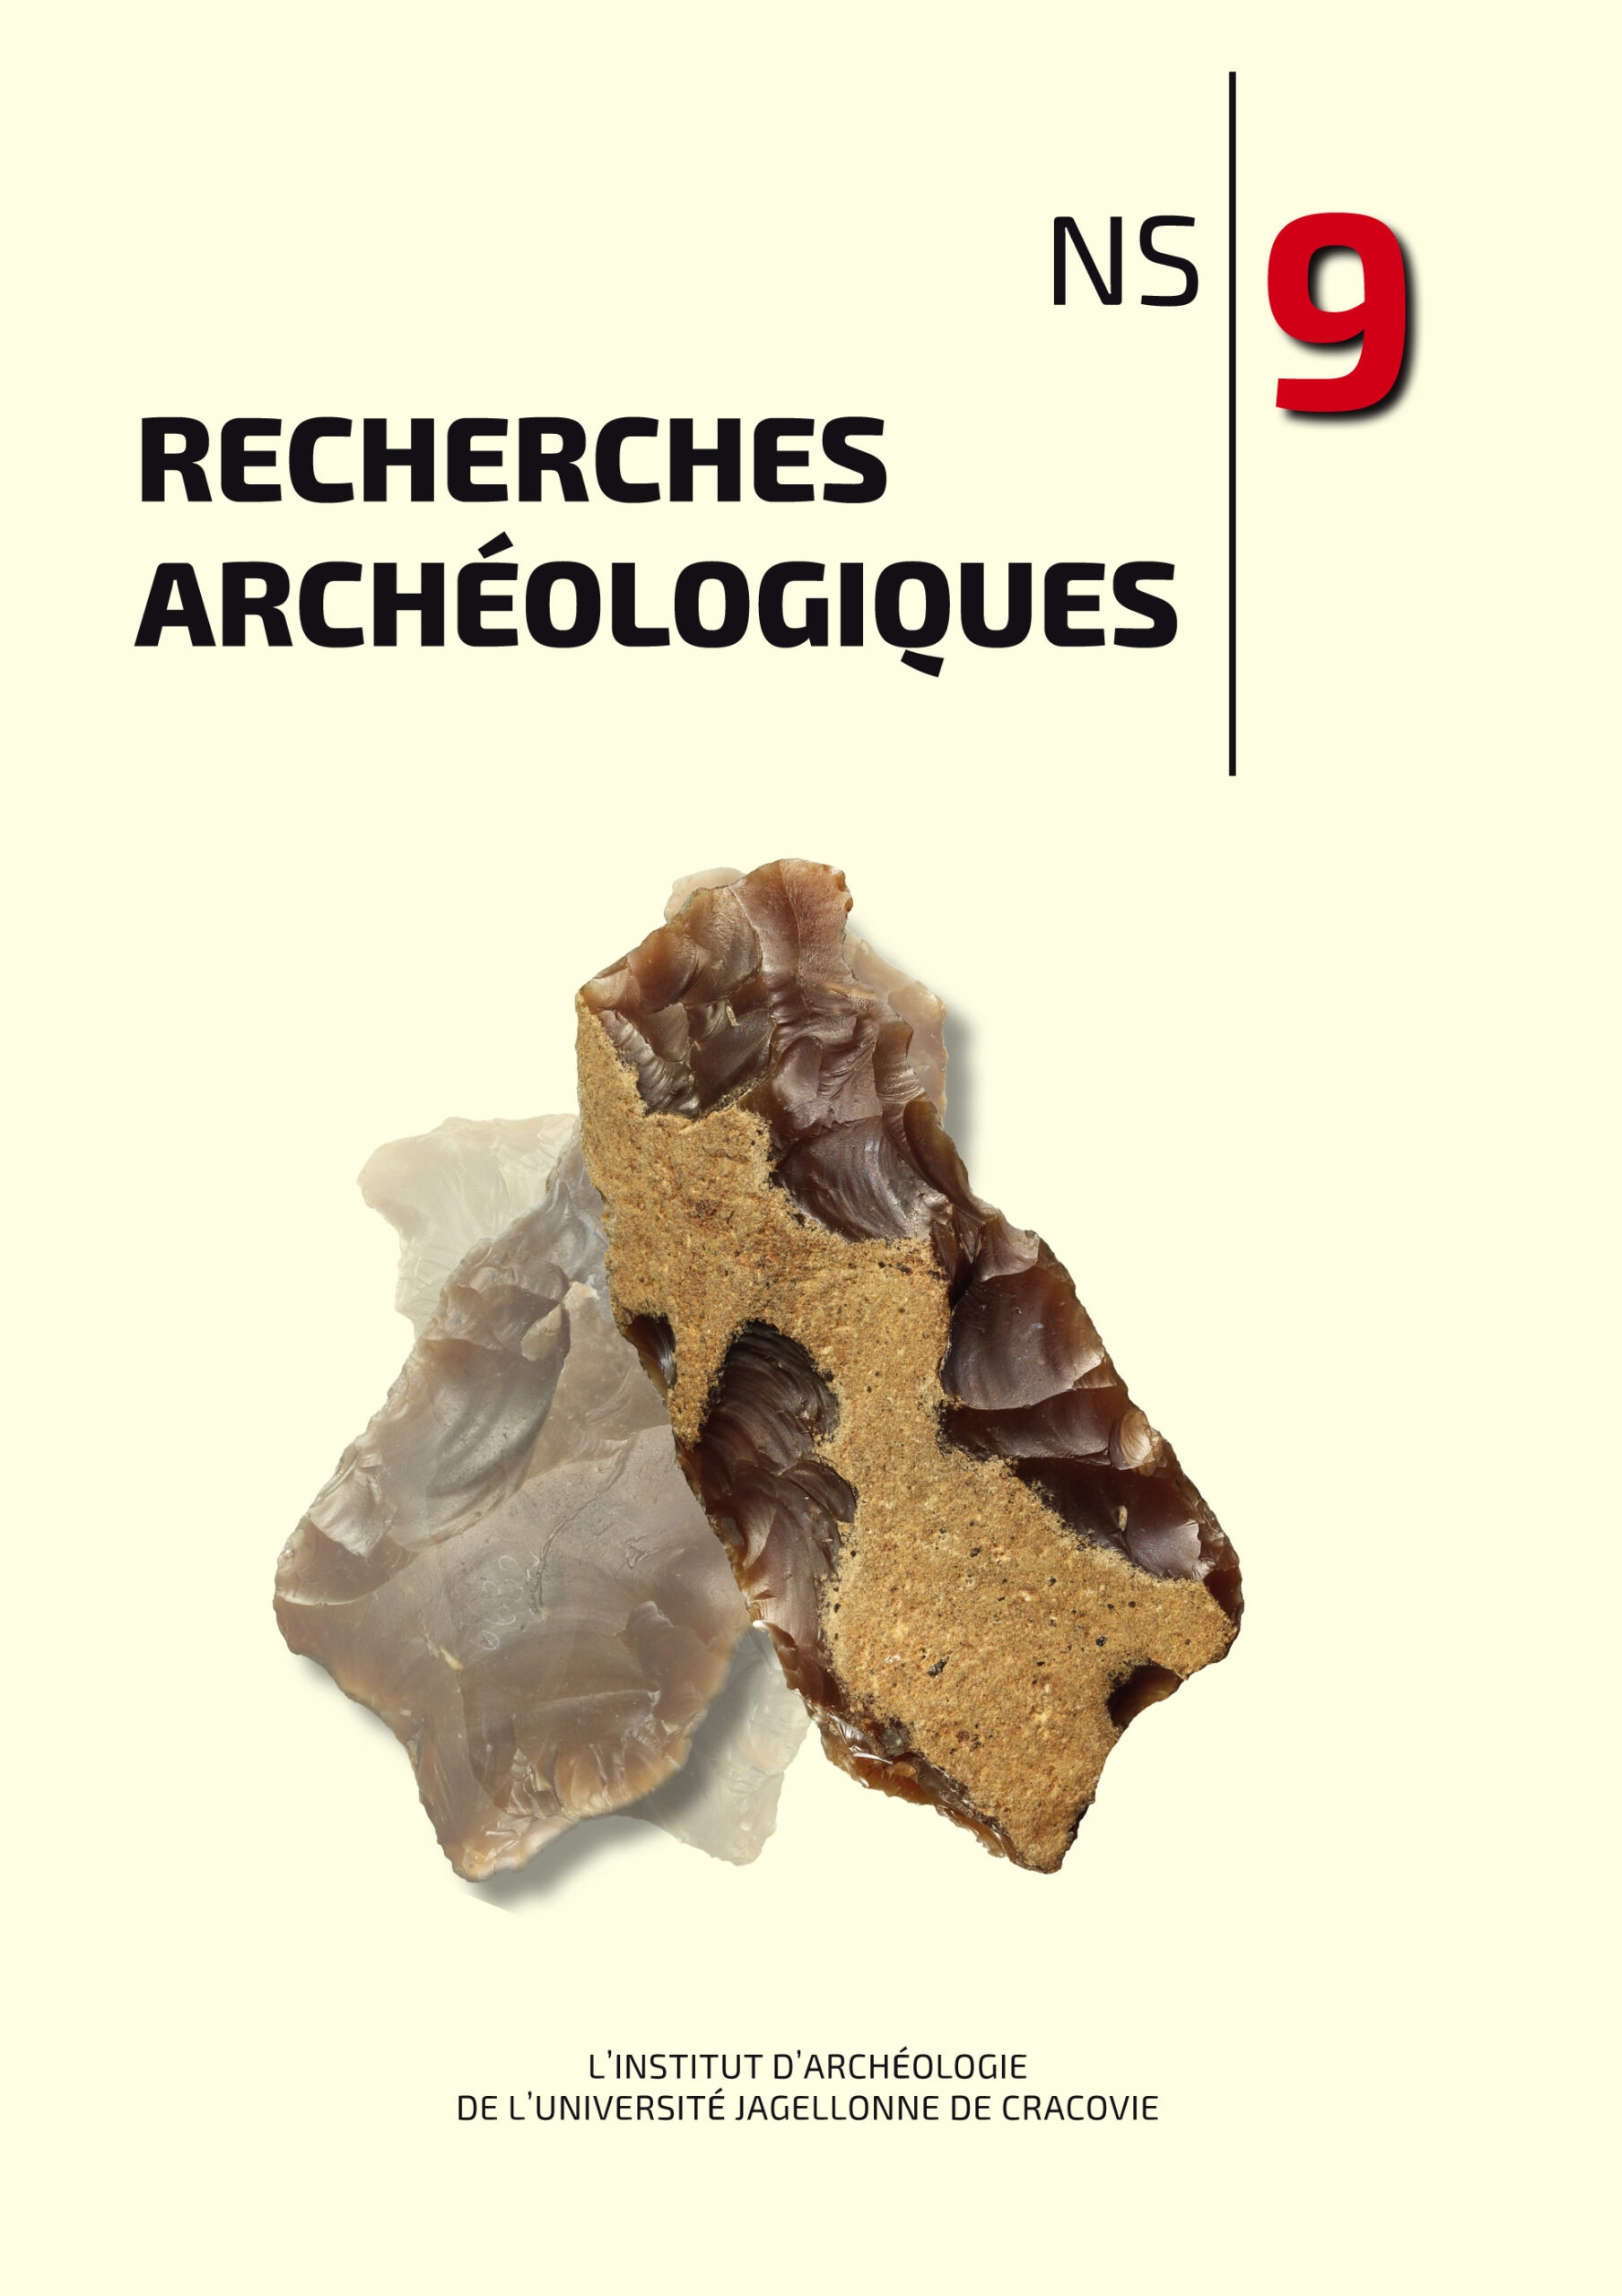 Recherches Archéologiques. NS 11